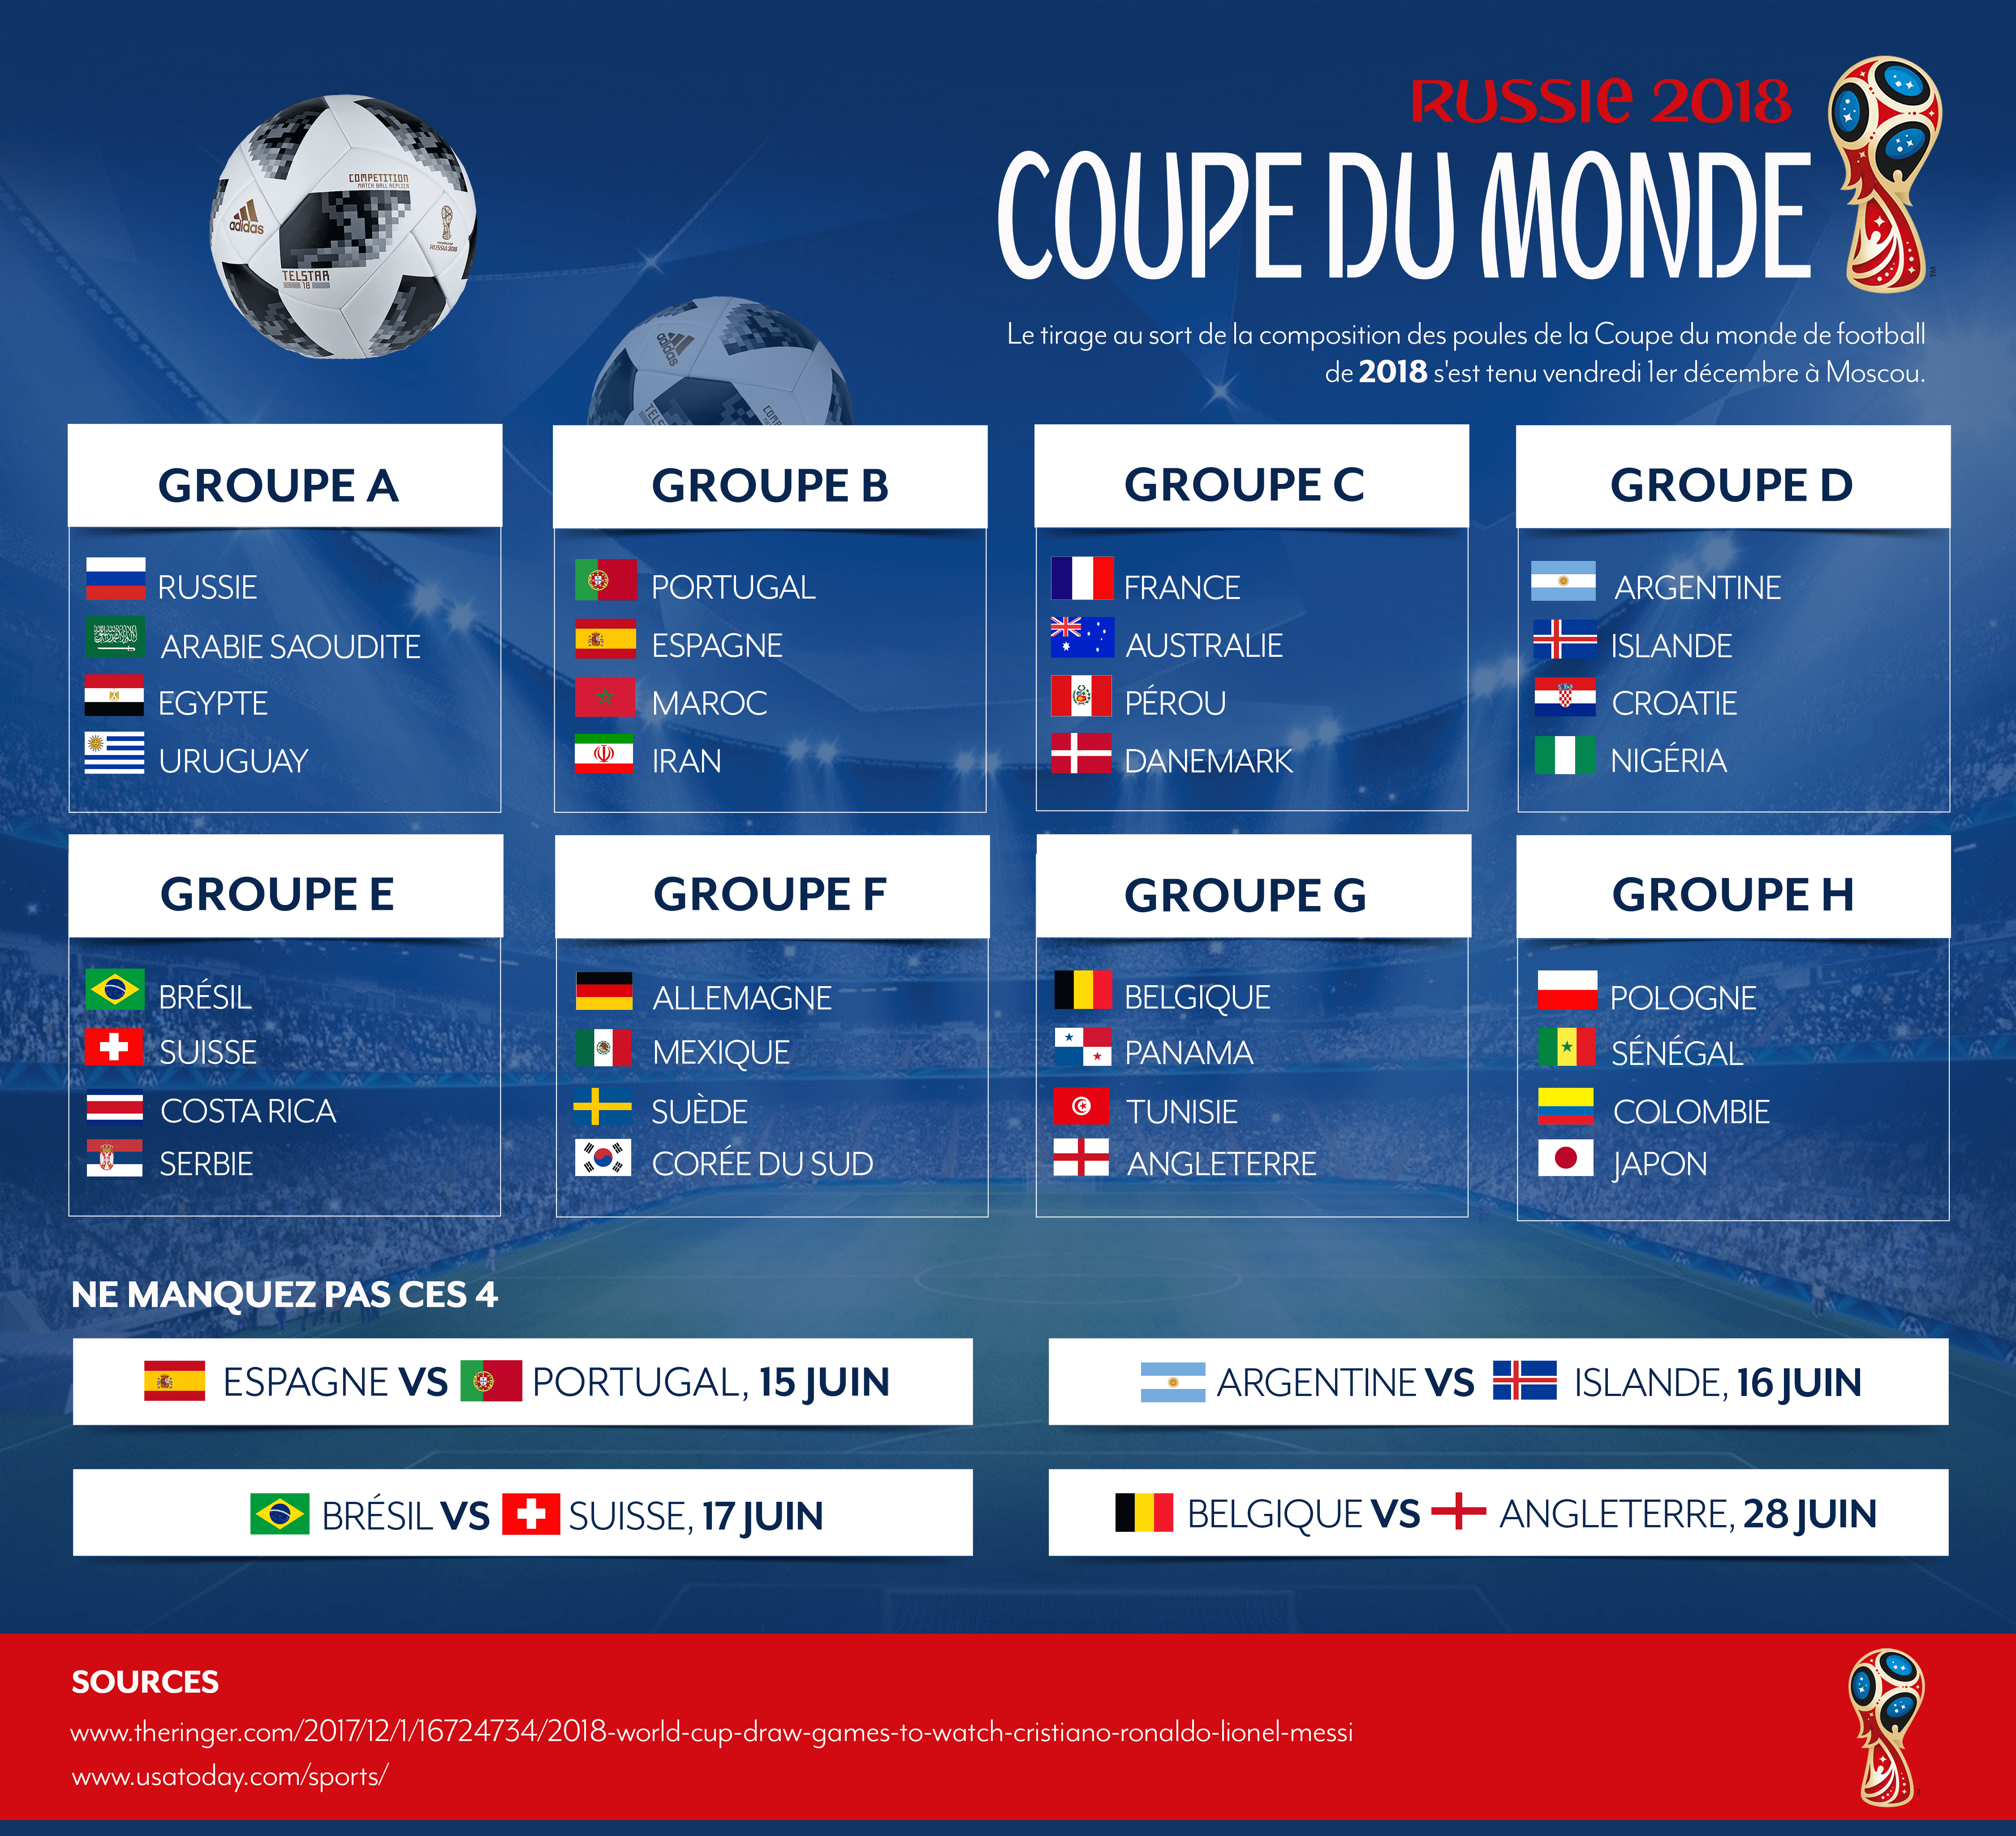 Le Groupe C et le match France VS Australie du 16 juin